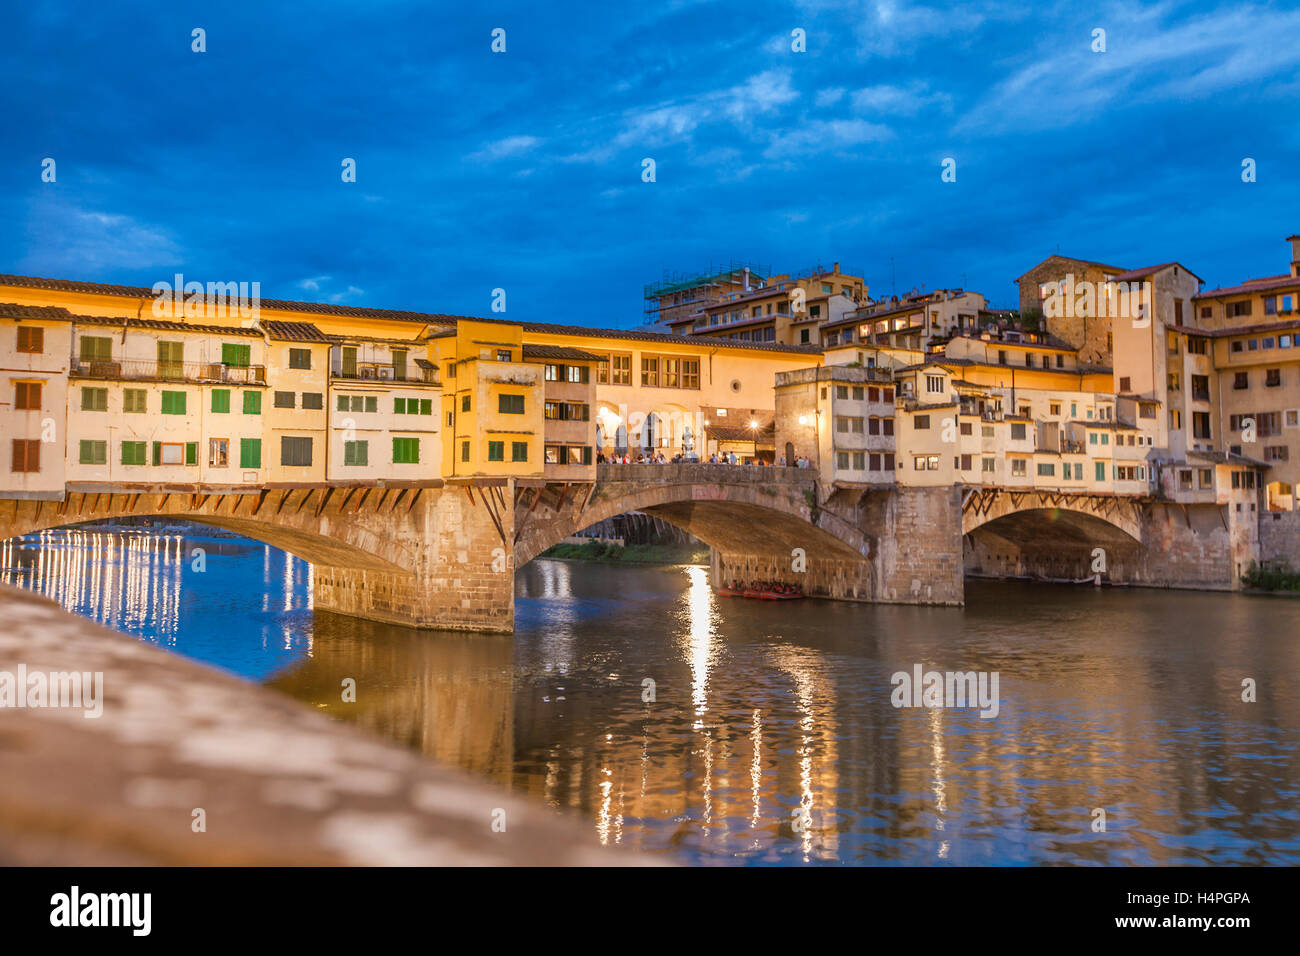 Ver en el puente Ponte Vecchio en Florencia, Italia, por la noche Foto de stock